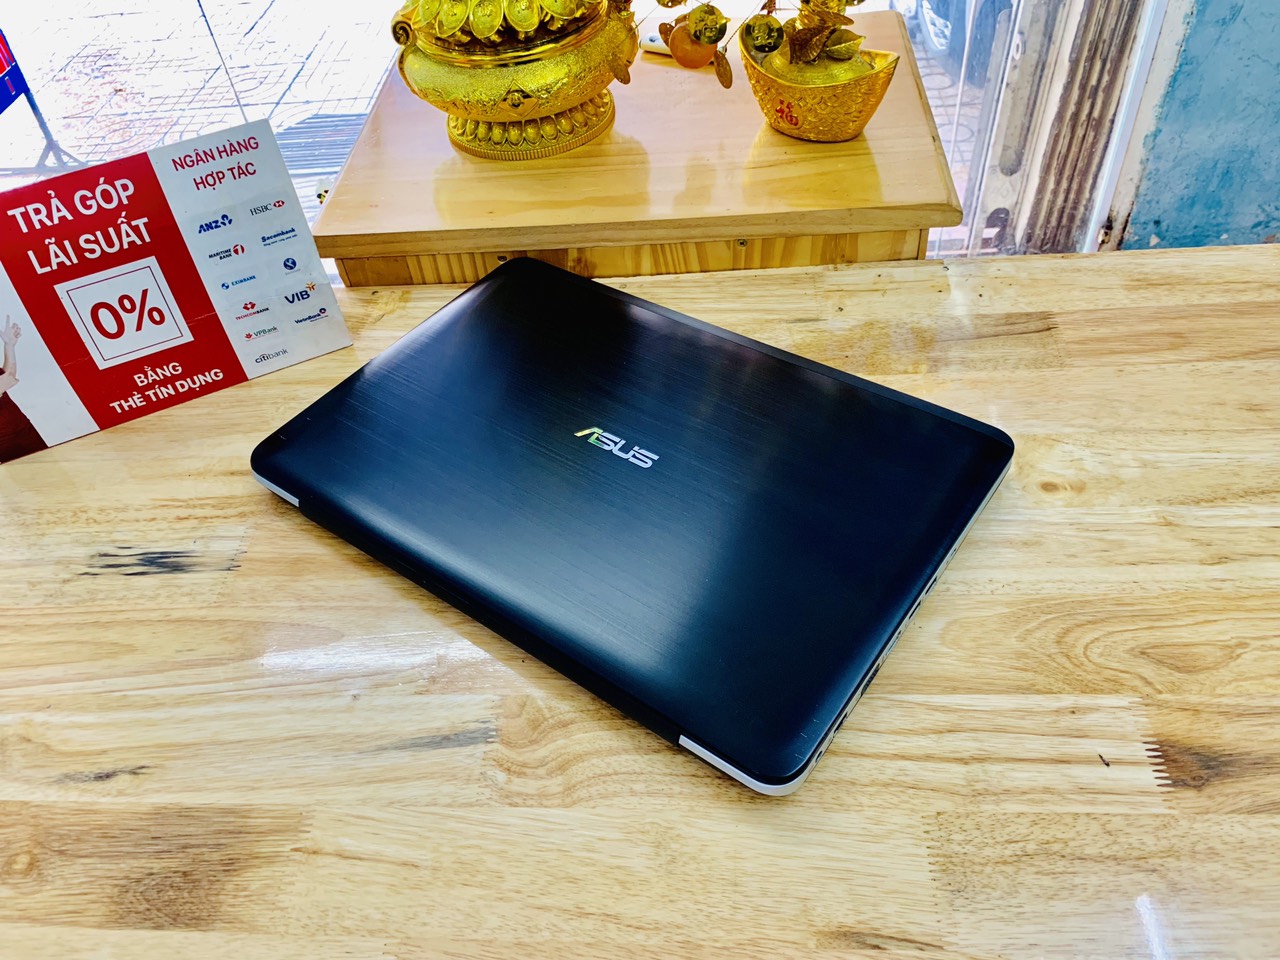 Laptop Asus